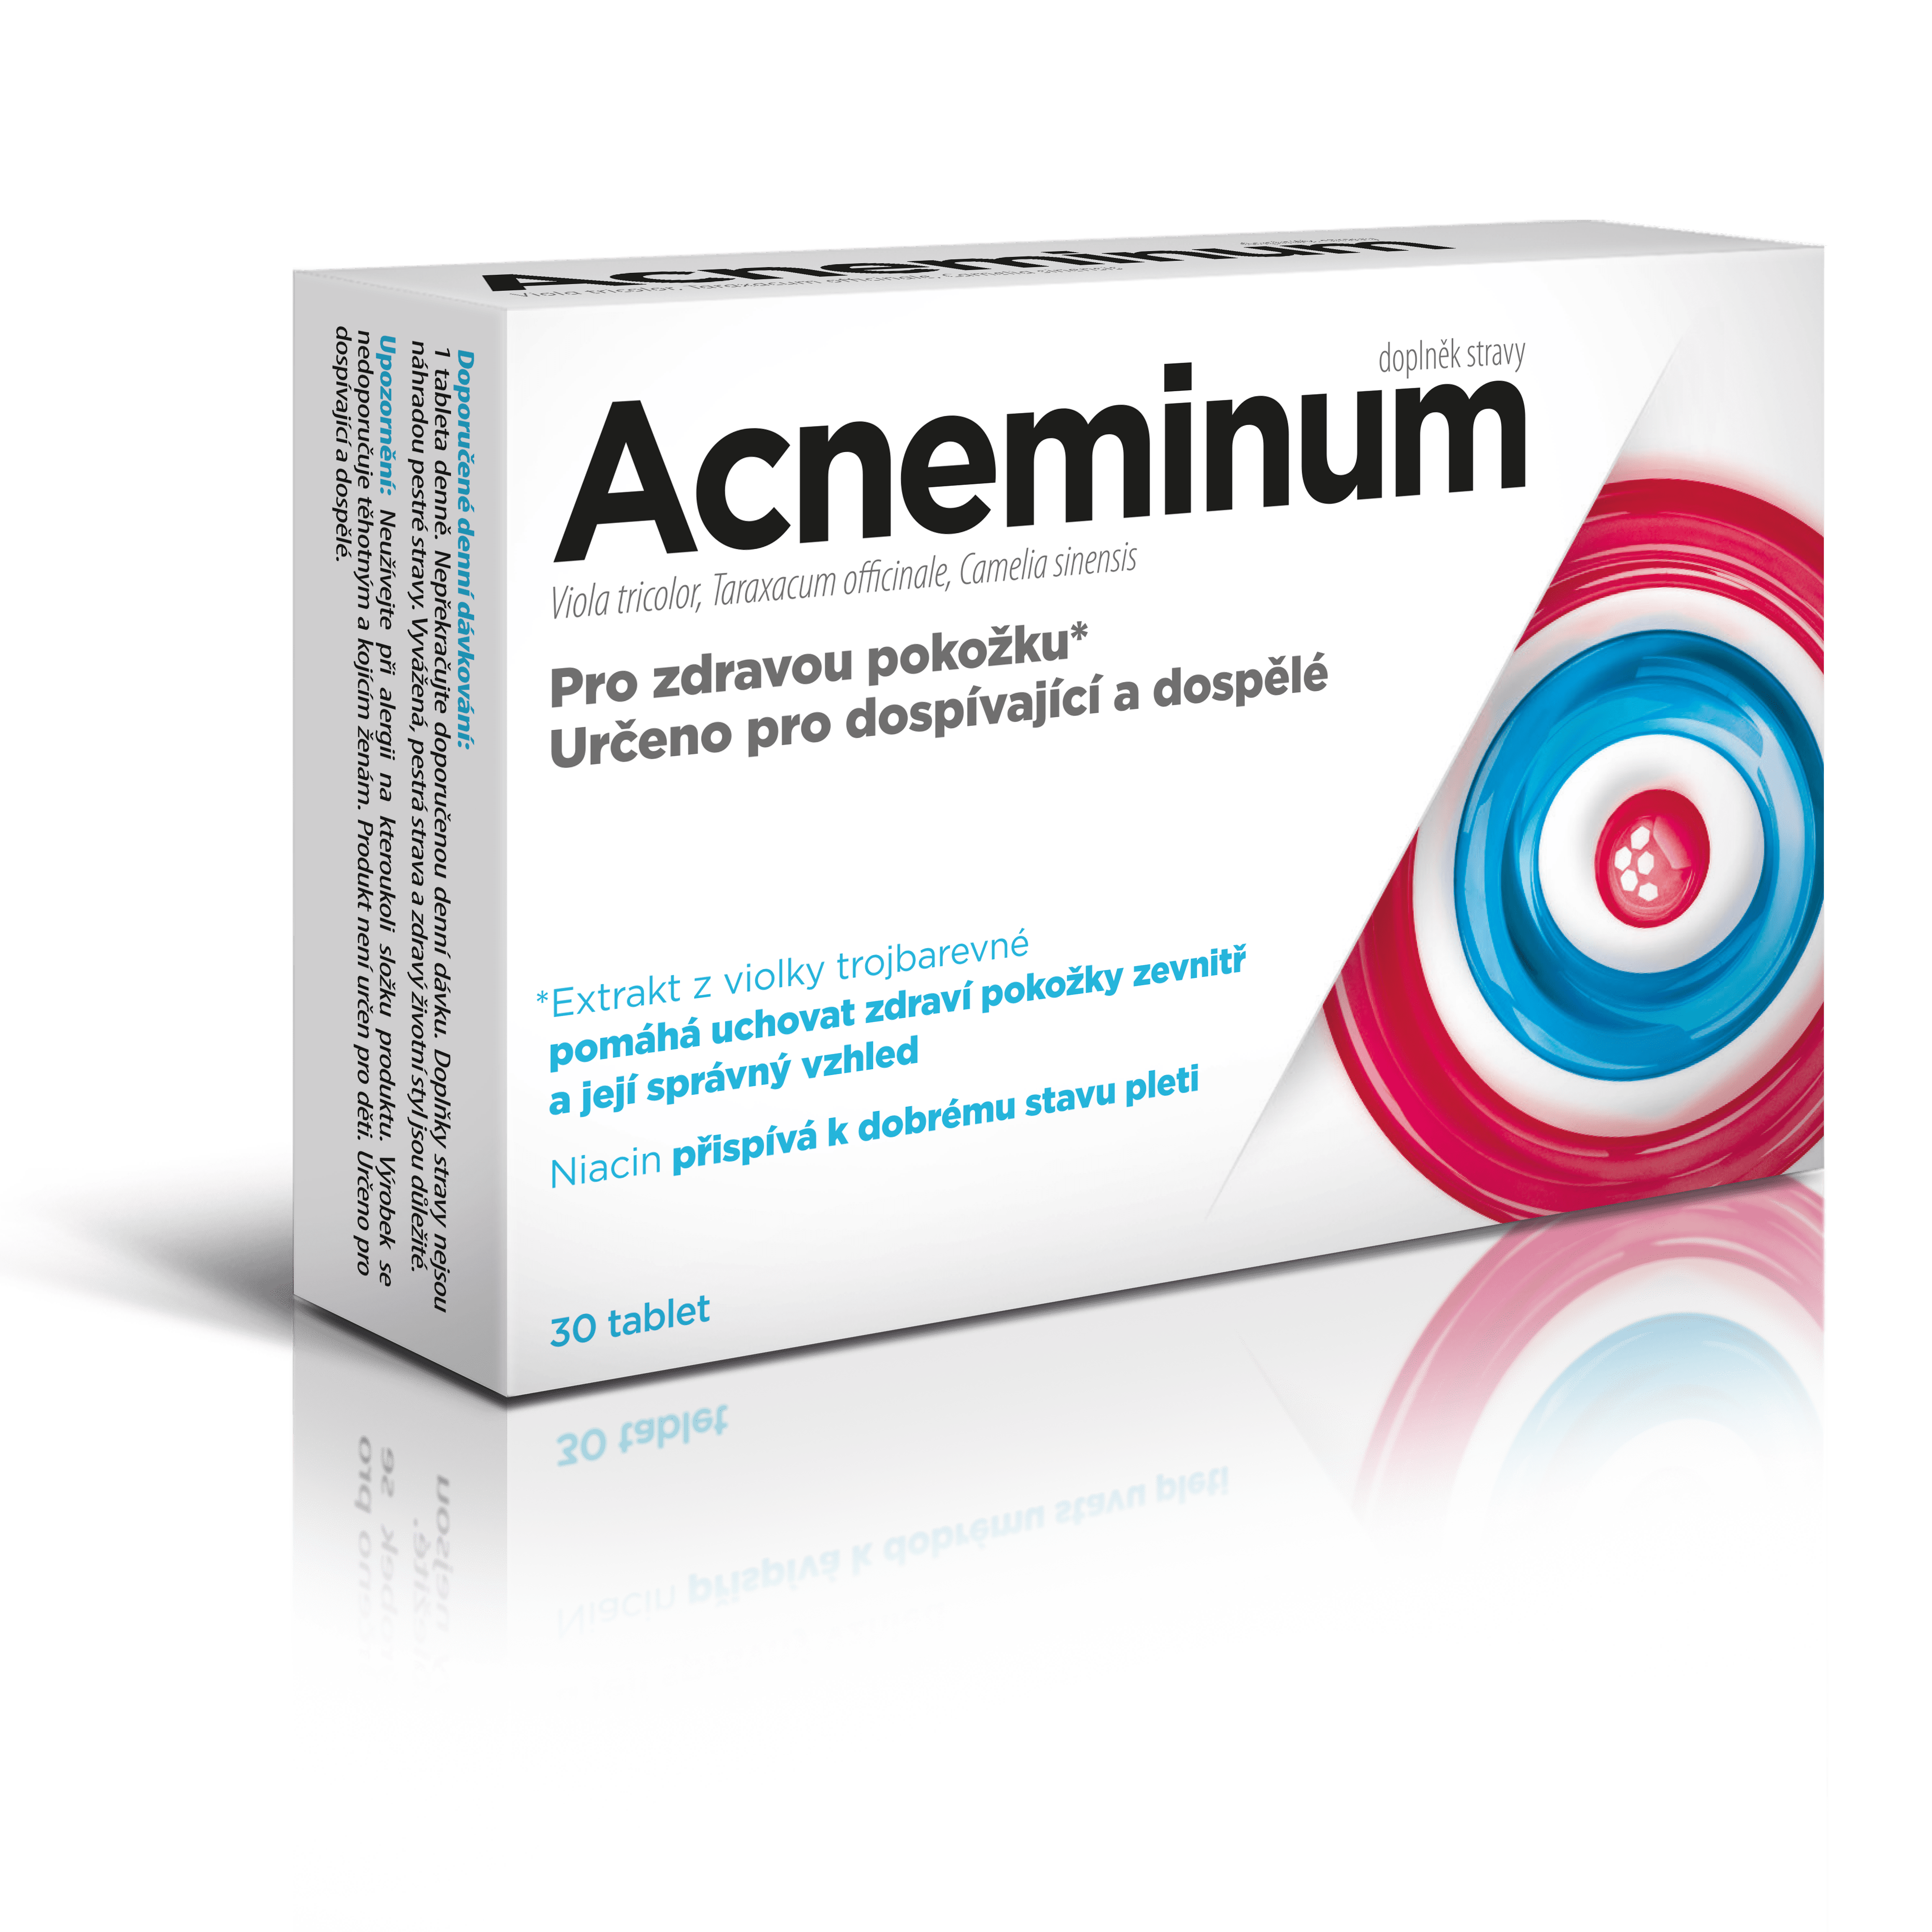 Acneminum